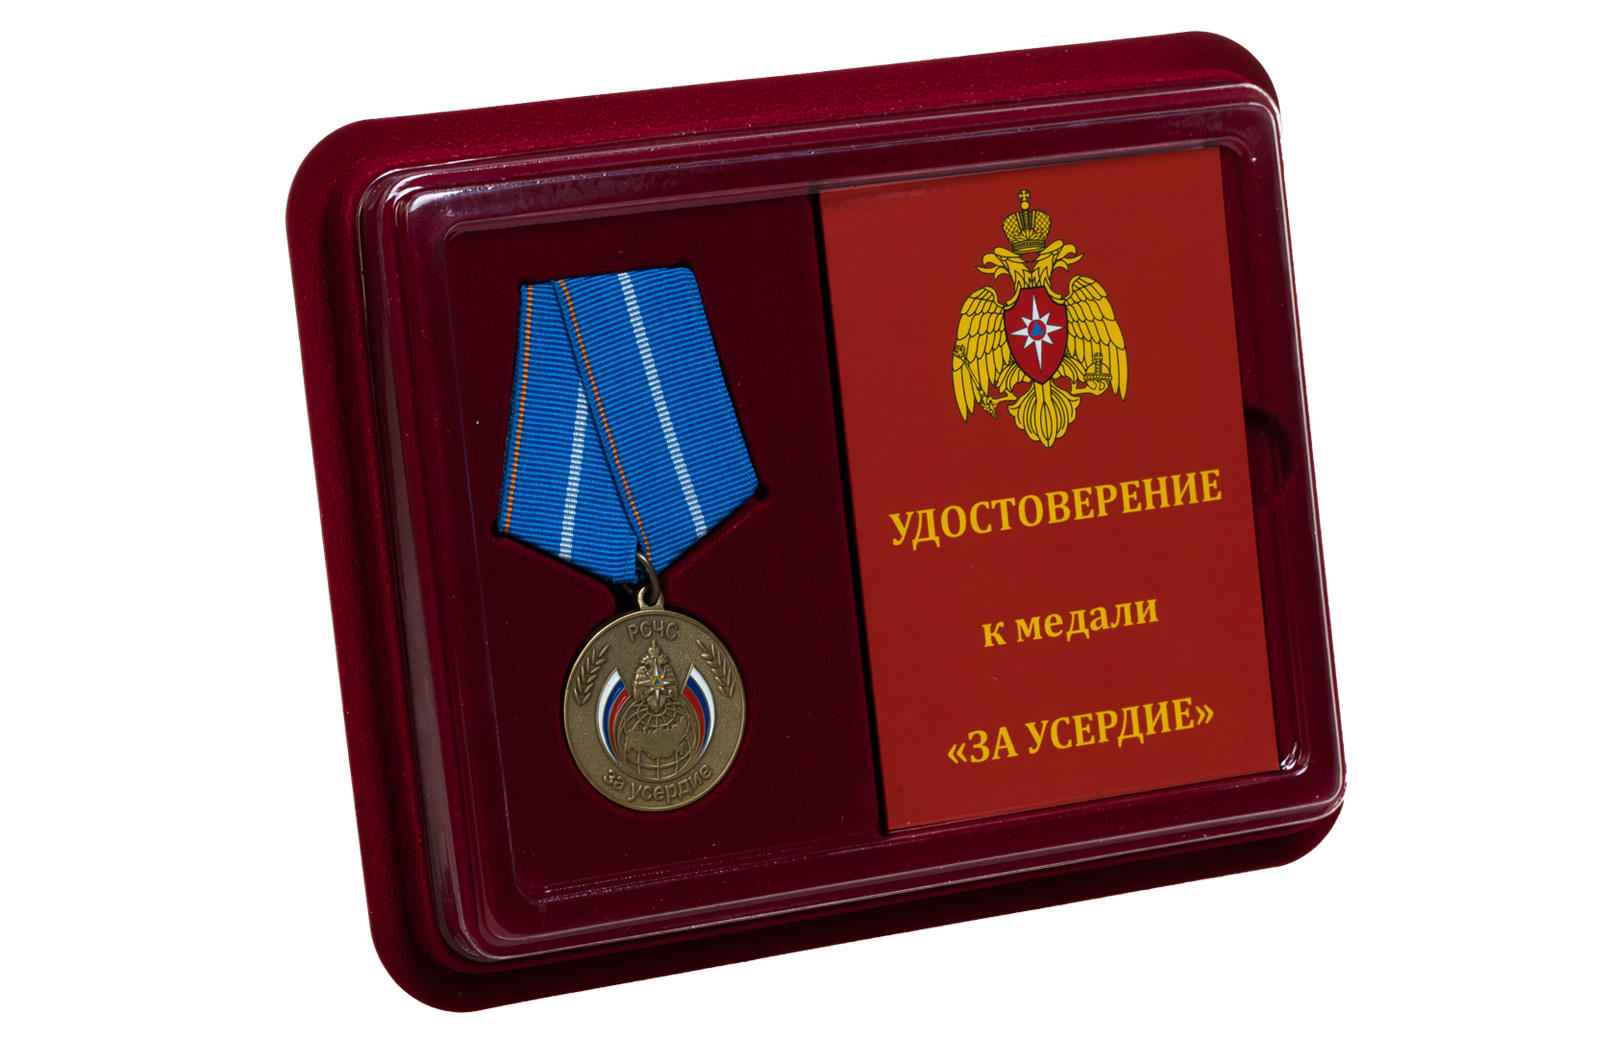 Купить медаль МЧС России За усердие оптом или в розницу